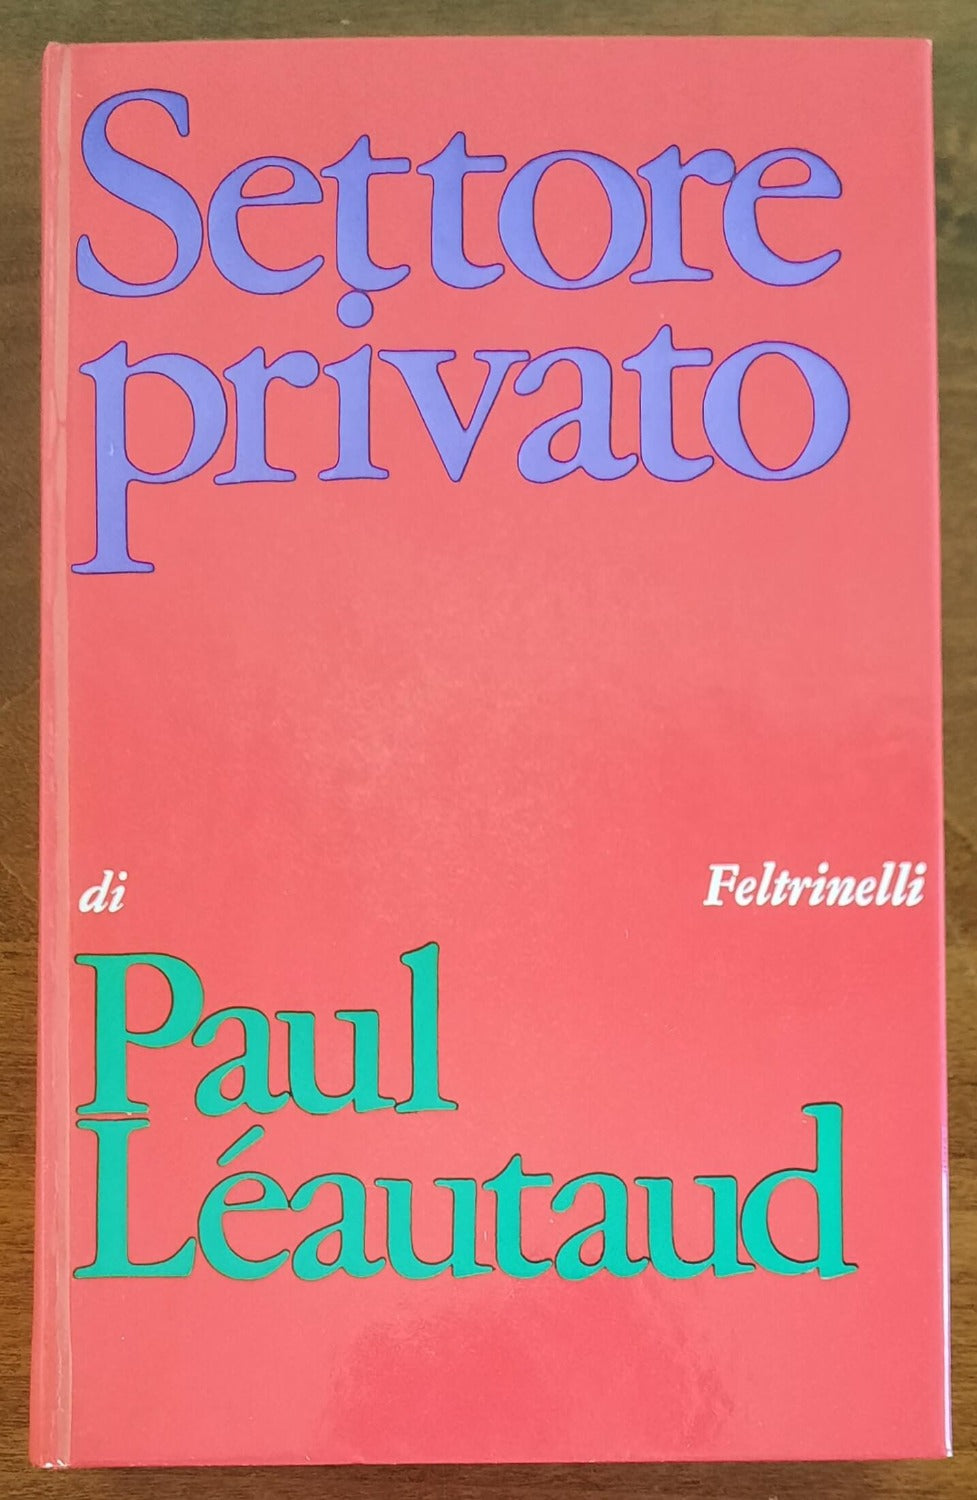 Settore privato - Feltrinelli - 1968